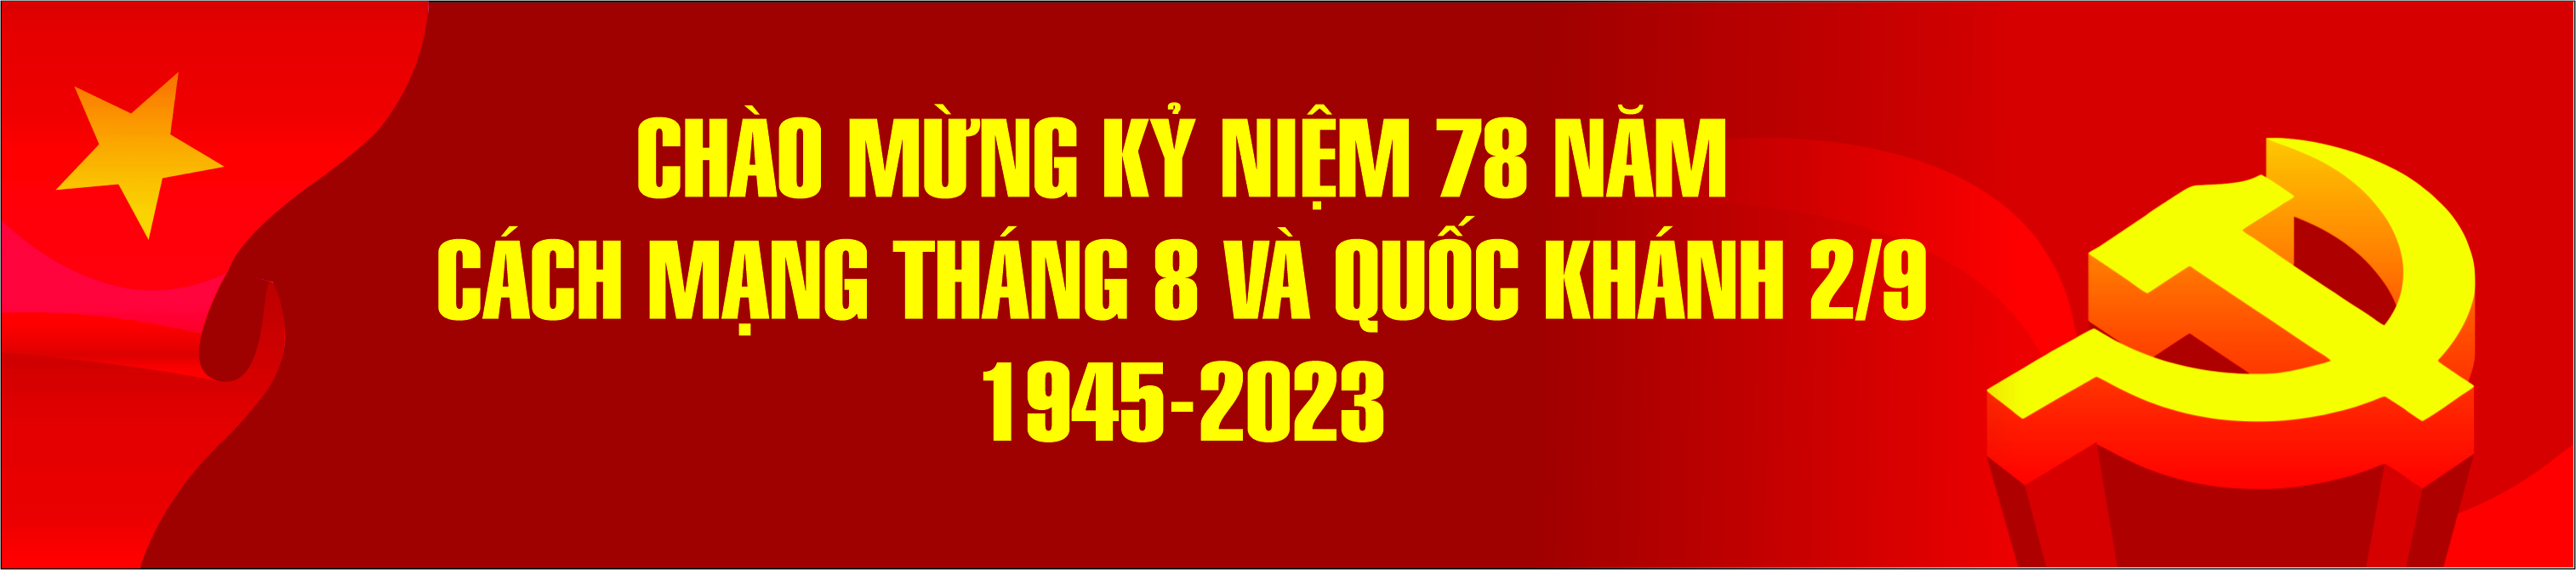 chao-mung-ky-niem-78-nam-cach-mang-thang-8-va-quoc-khanh-29-1945-2023